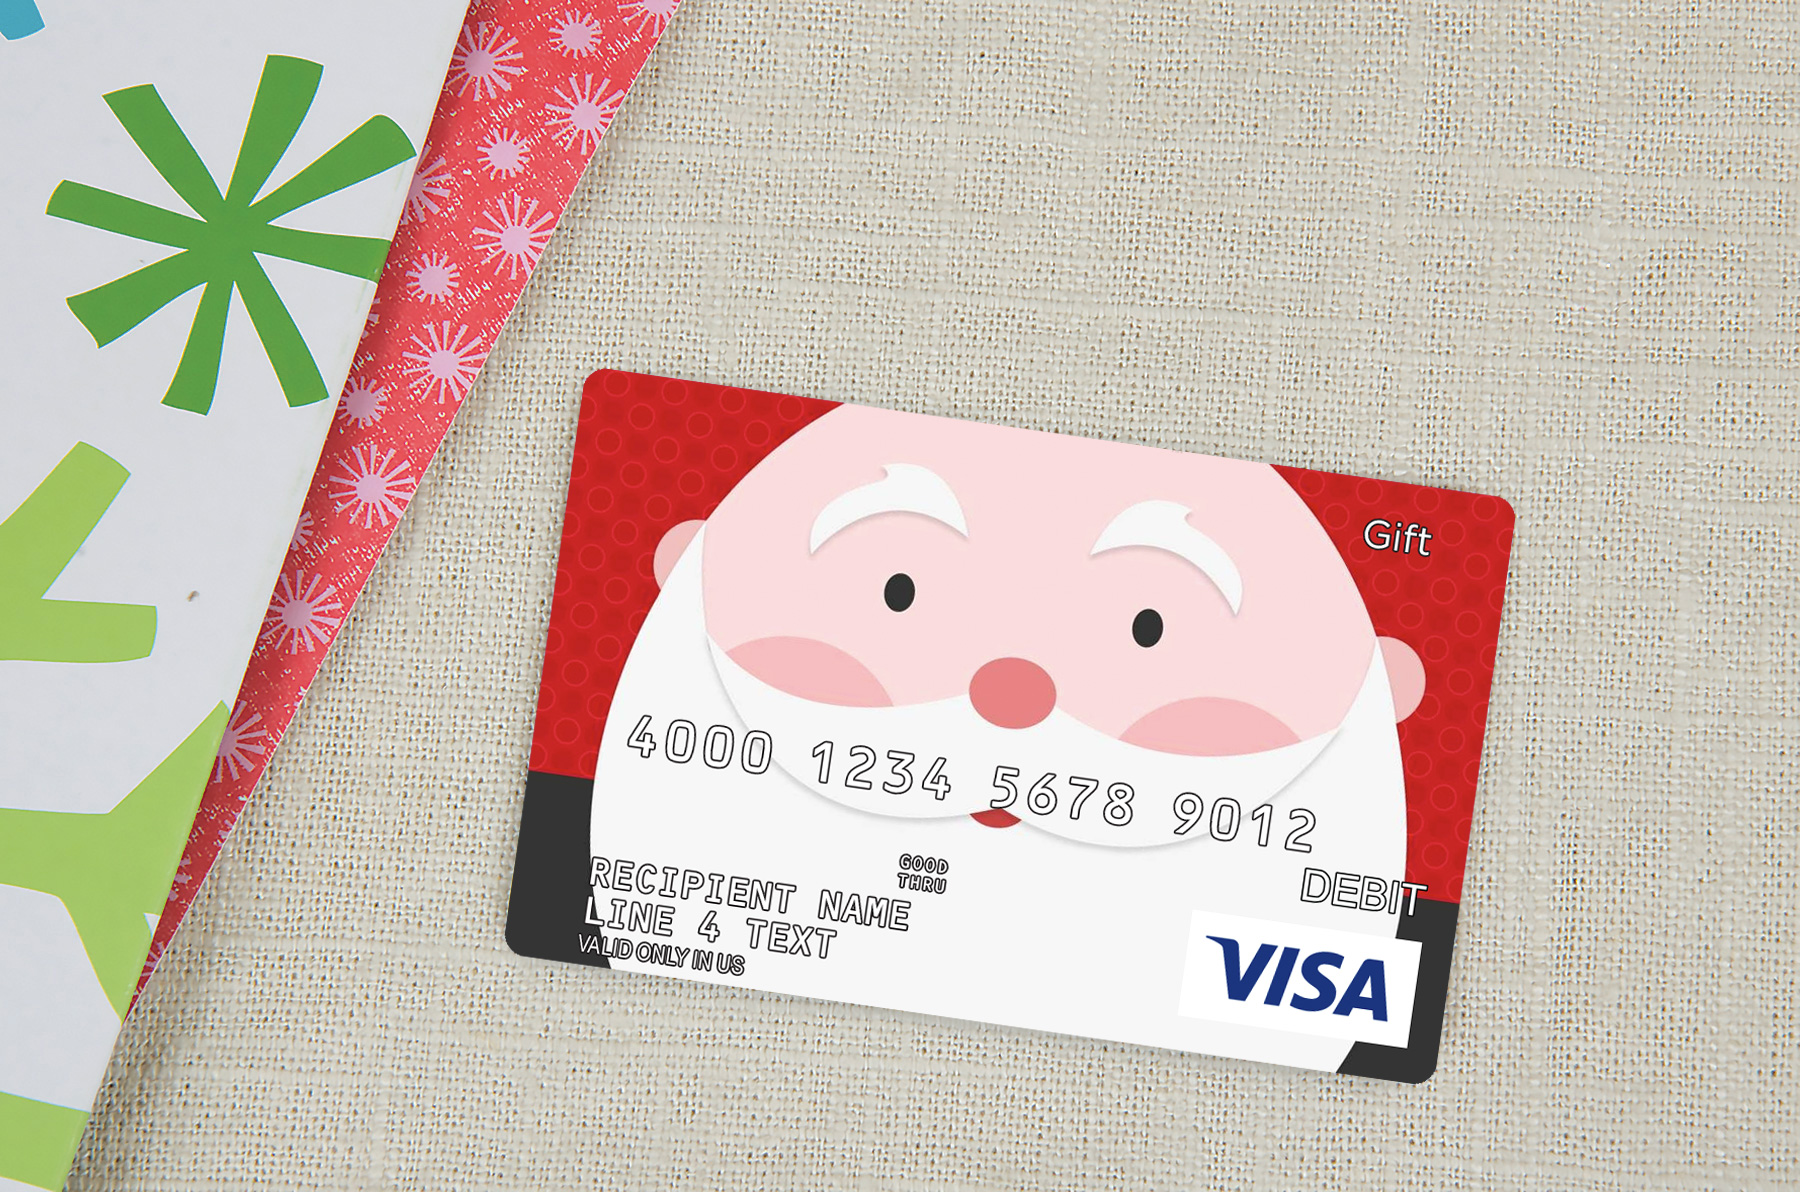 Stream Visa Gift Card Register - Order Gift Cards Online from Michael C.  Utsey | Listen online for free on SoundCloud